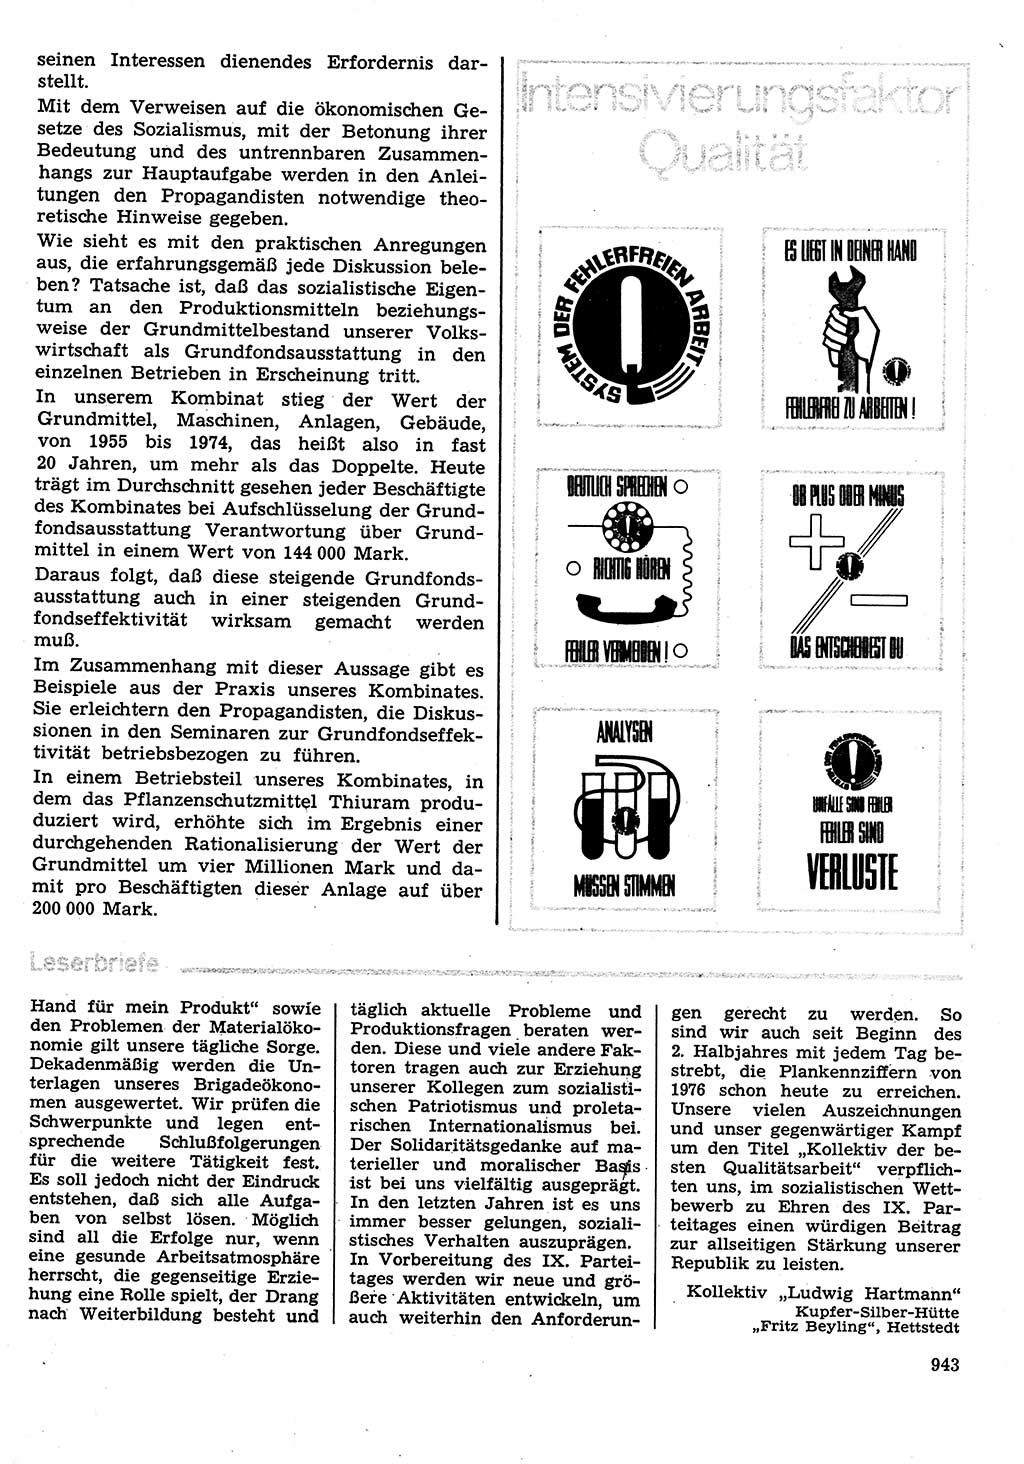 Neuer Weg (NW), Organ des Zentralkomitees (ZK) der SED (Sozialistische Einheitspartei Deutschlands) für Fragen des Parteilebens, 30. Jahrgang [Deutsche Demokratische Republik (DDR)] 1975, Seite 943 (NW ZK SED DDR 1975, S. 943)